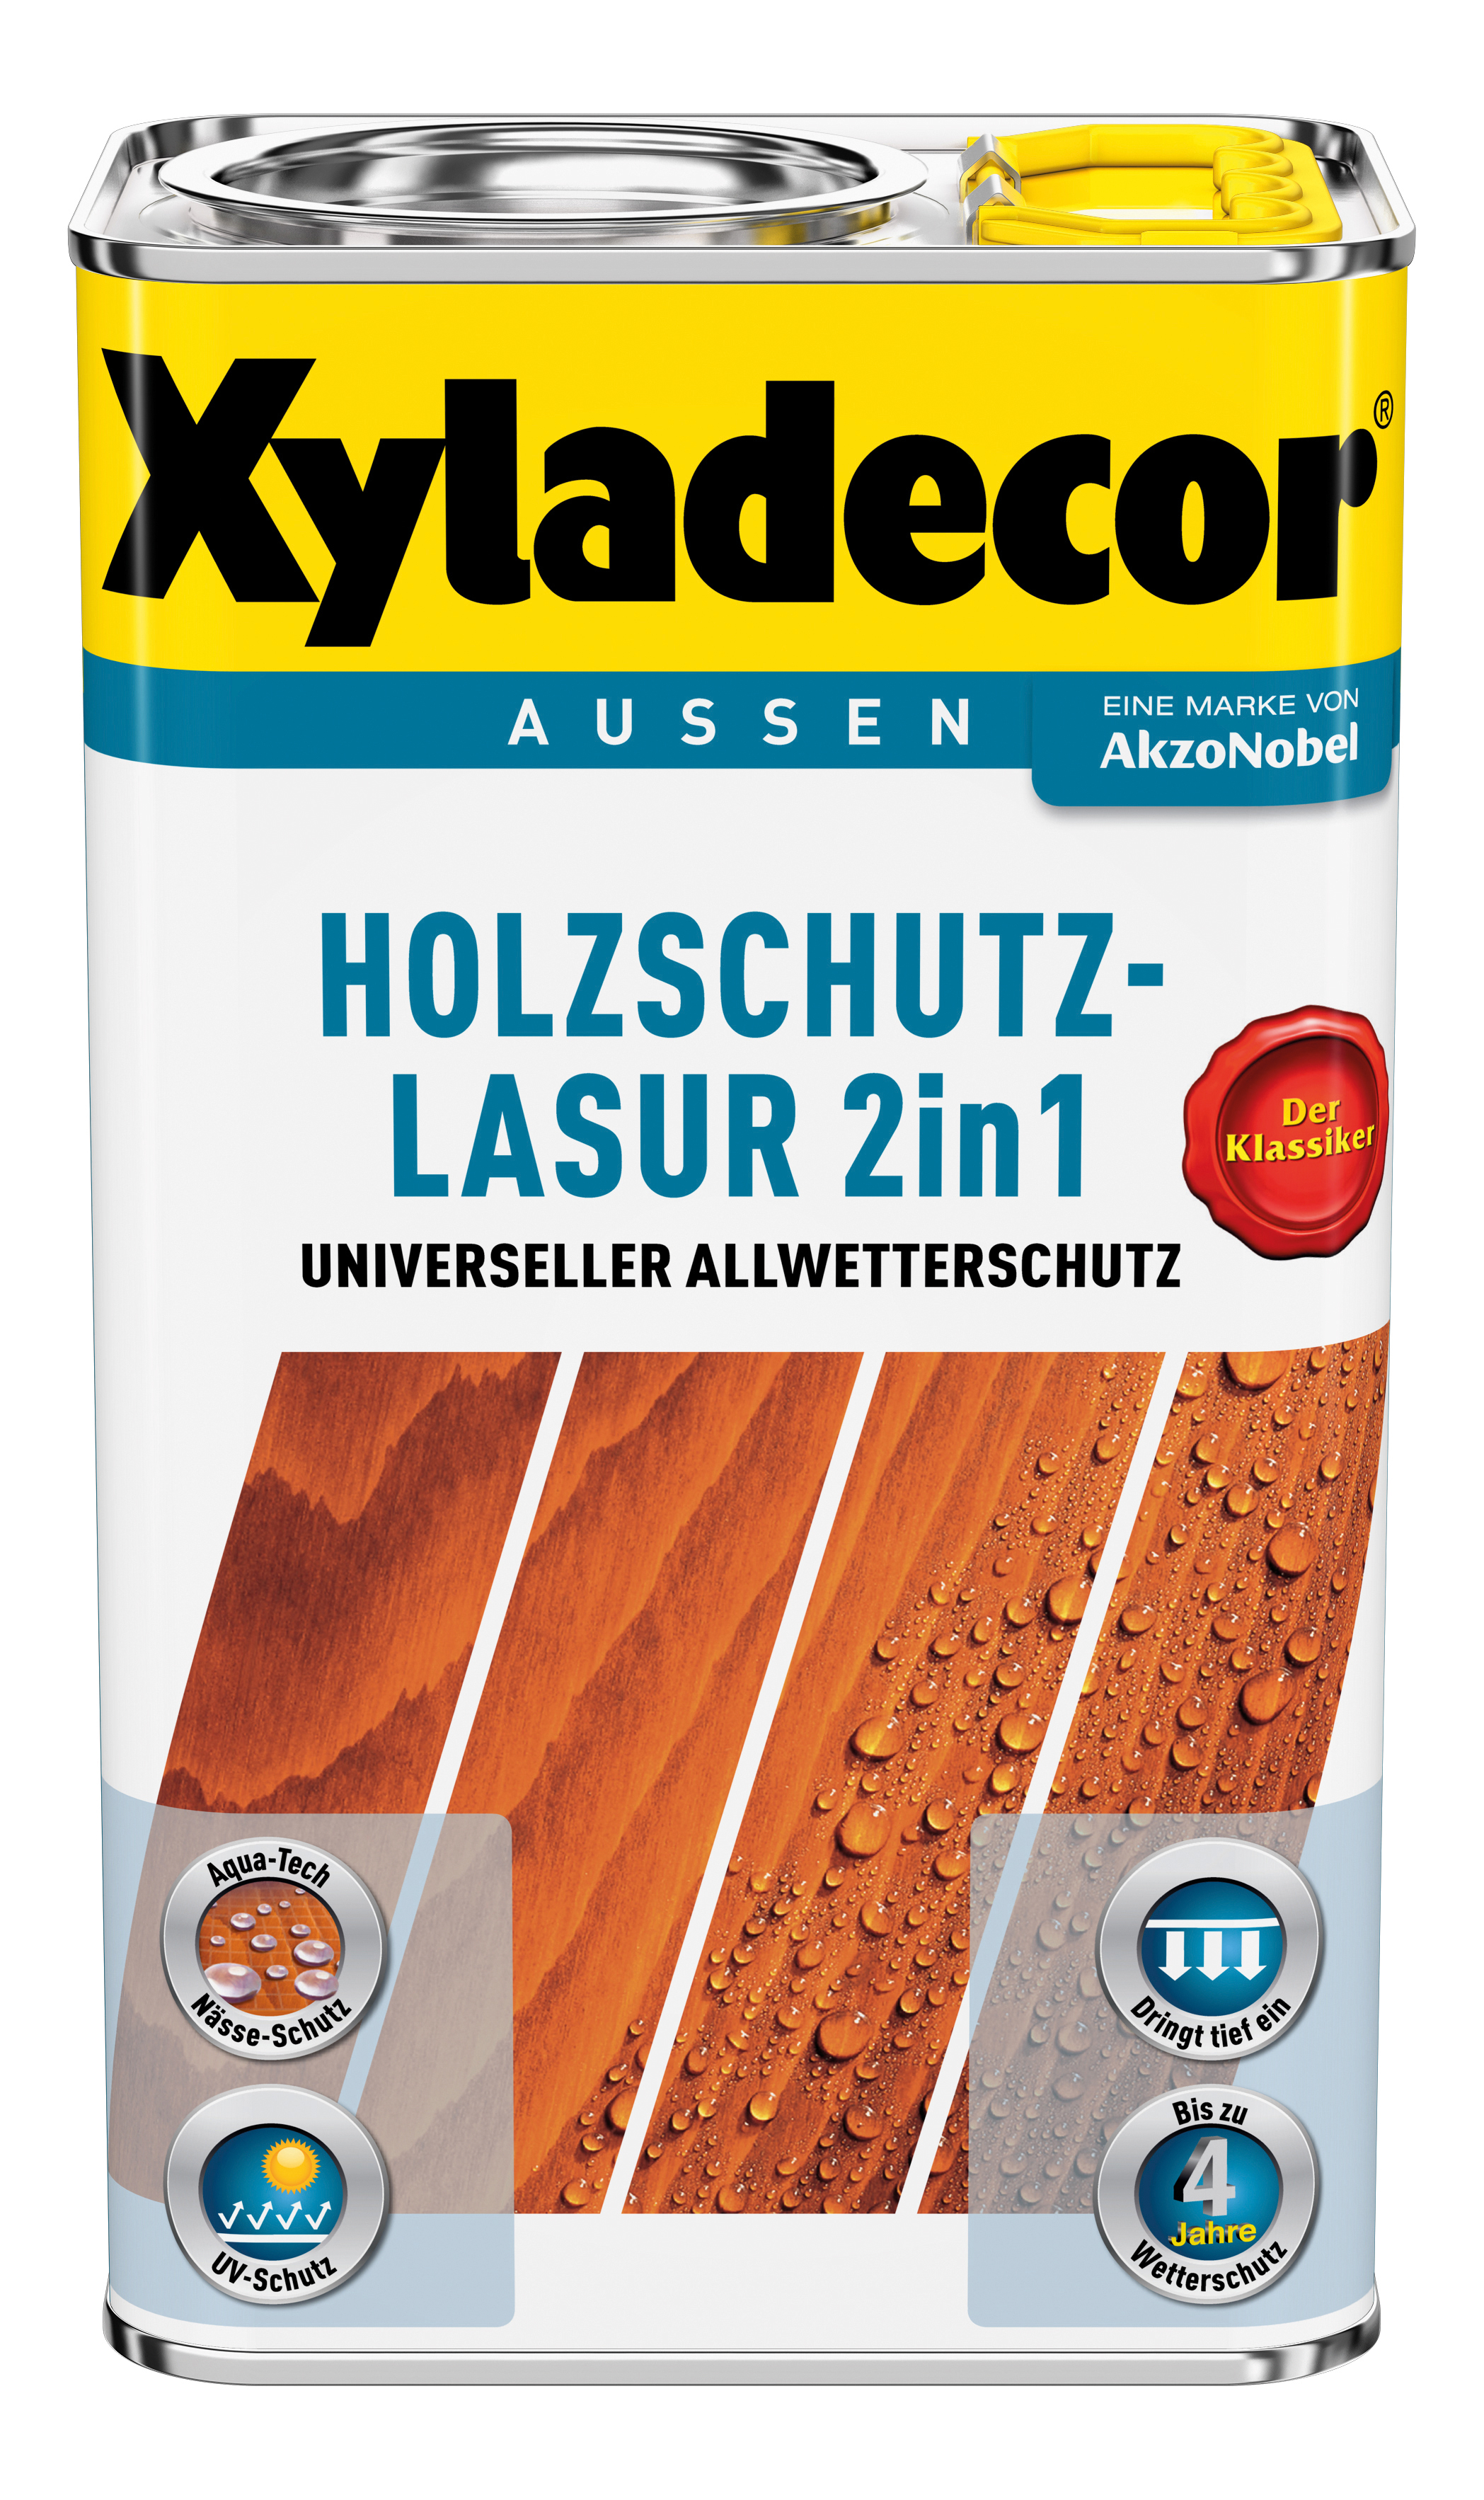 AKZO NOBEL DECO Holzschutzlasur lh farblos 2,5L Xyladecor